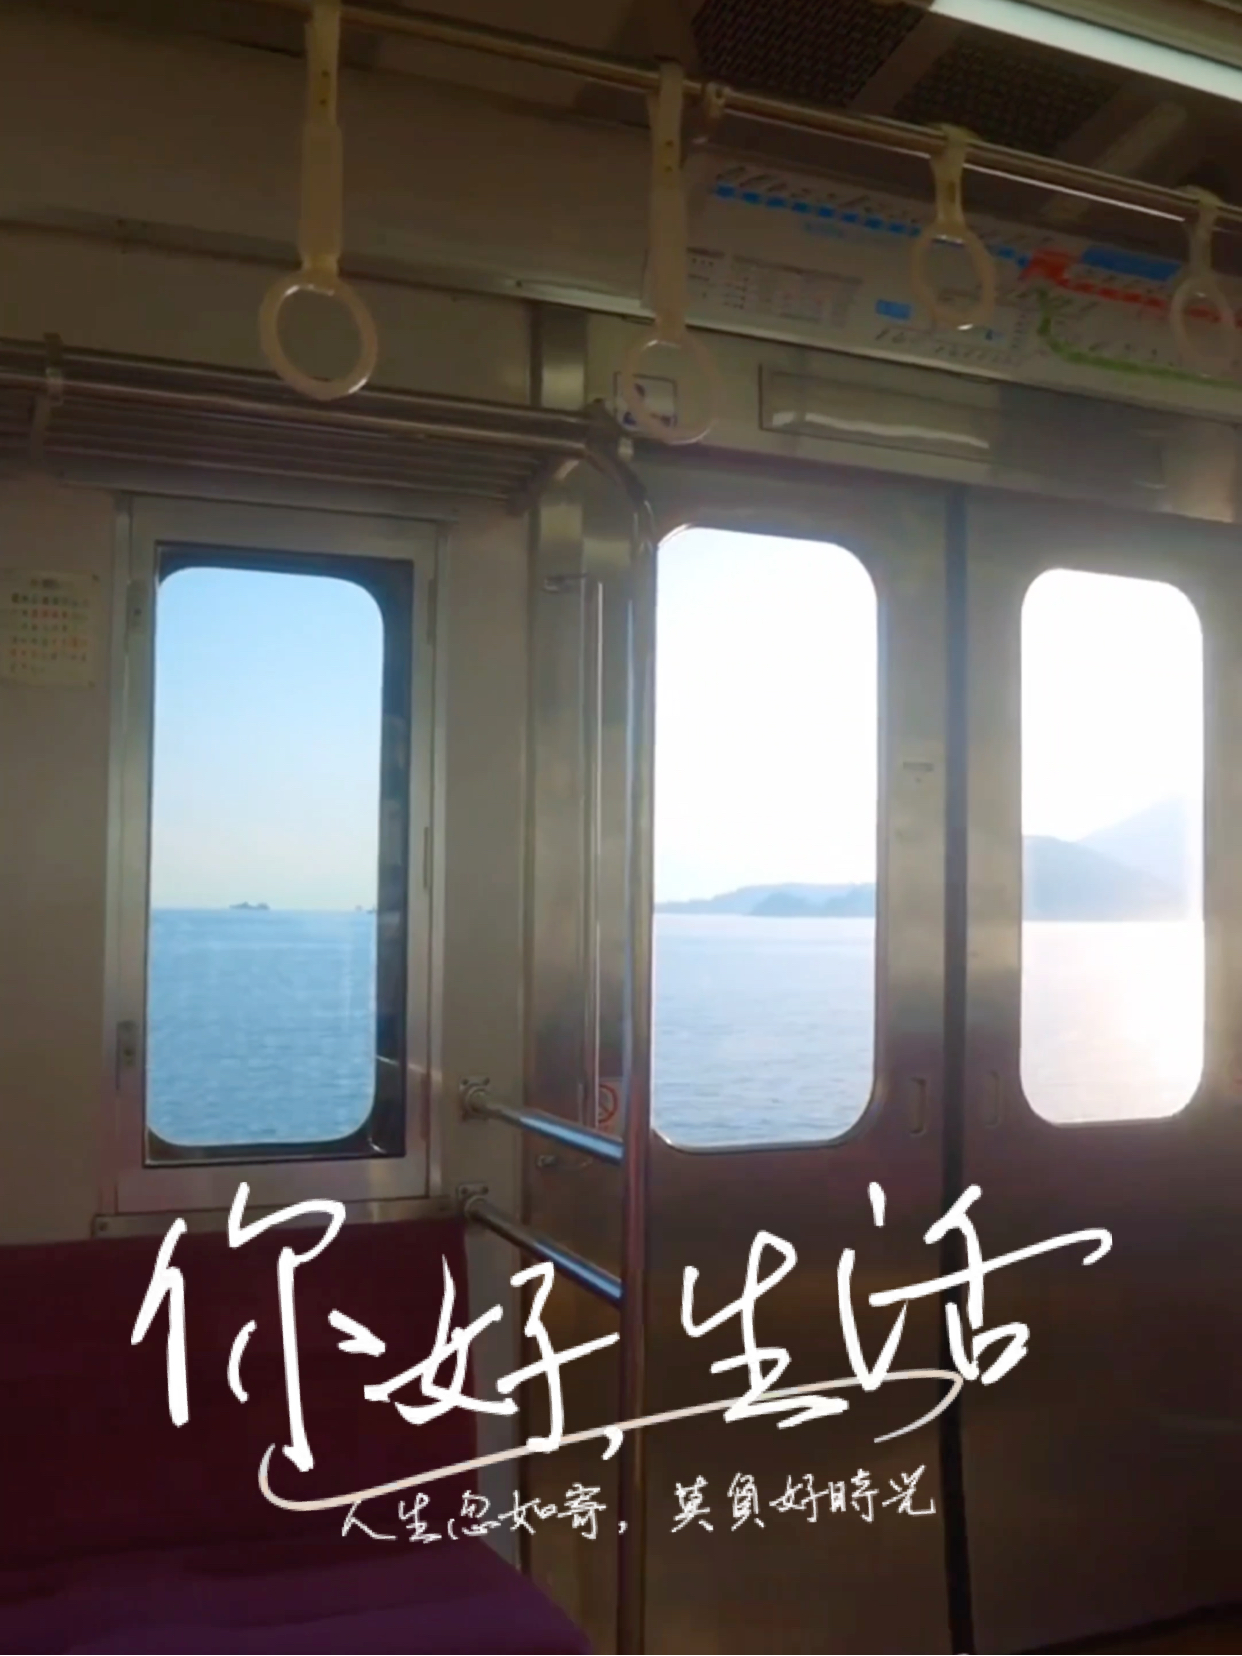 宫崎骏漫画里的海上列车原来真的存在